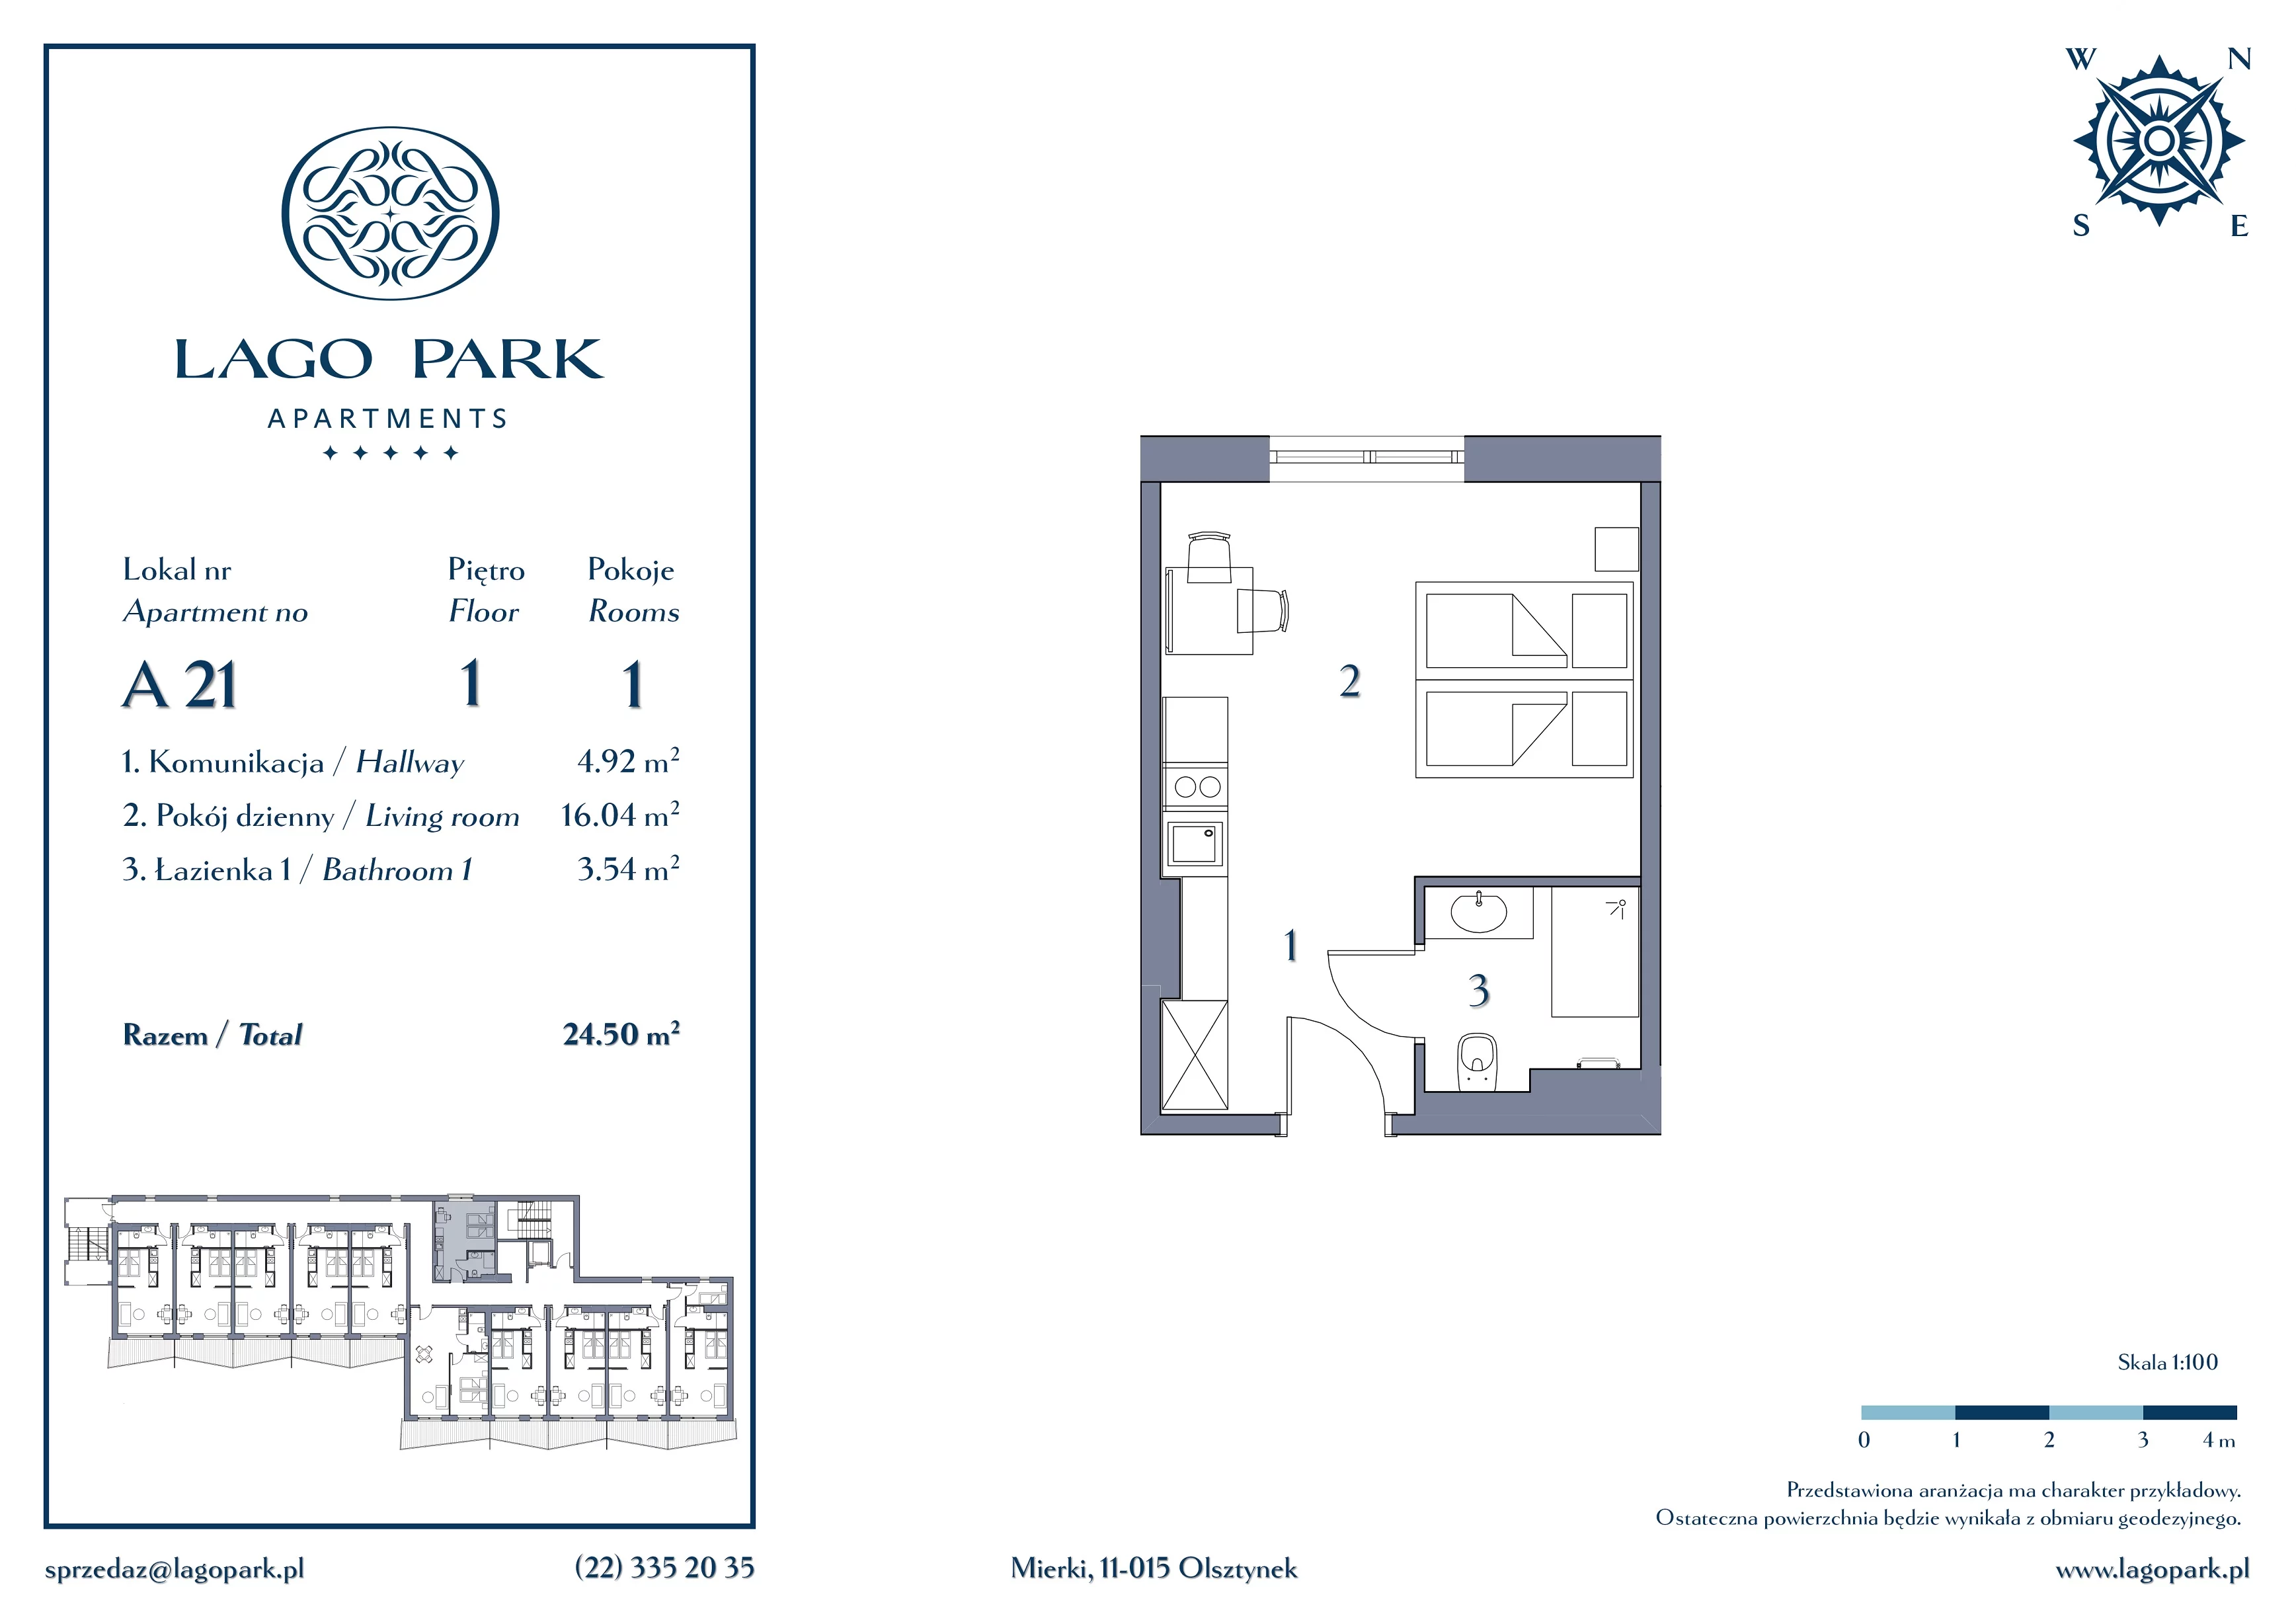 Apartament inwestycyjny 24,50 m², piętro 1, oferta nr A21, Lago Park Apartments by Aries, Mierki, Kołatek 2